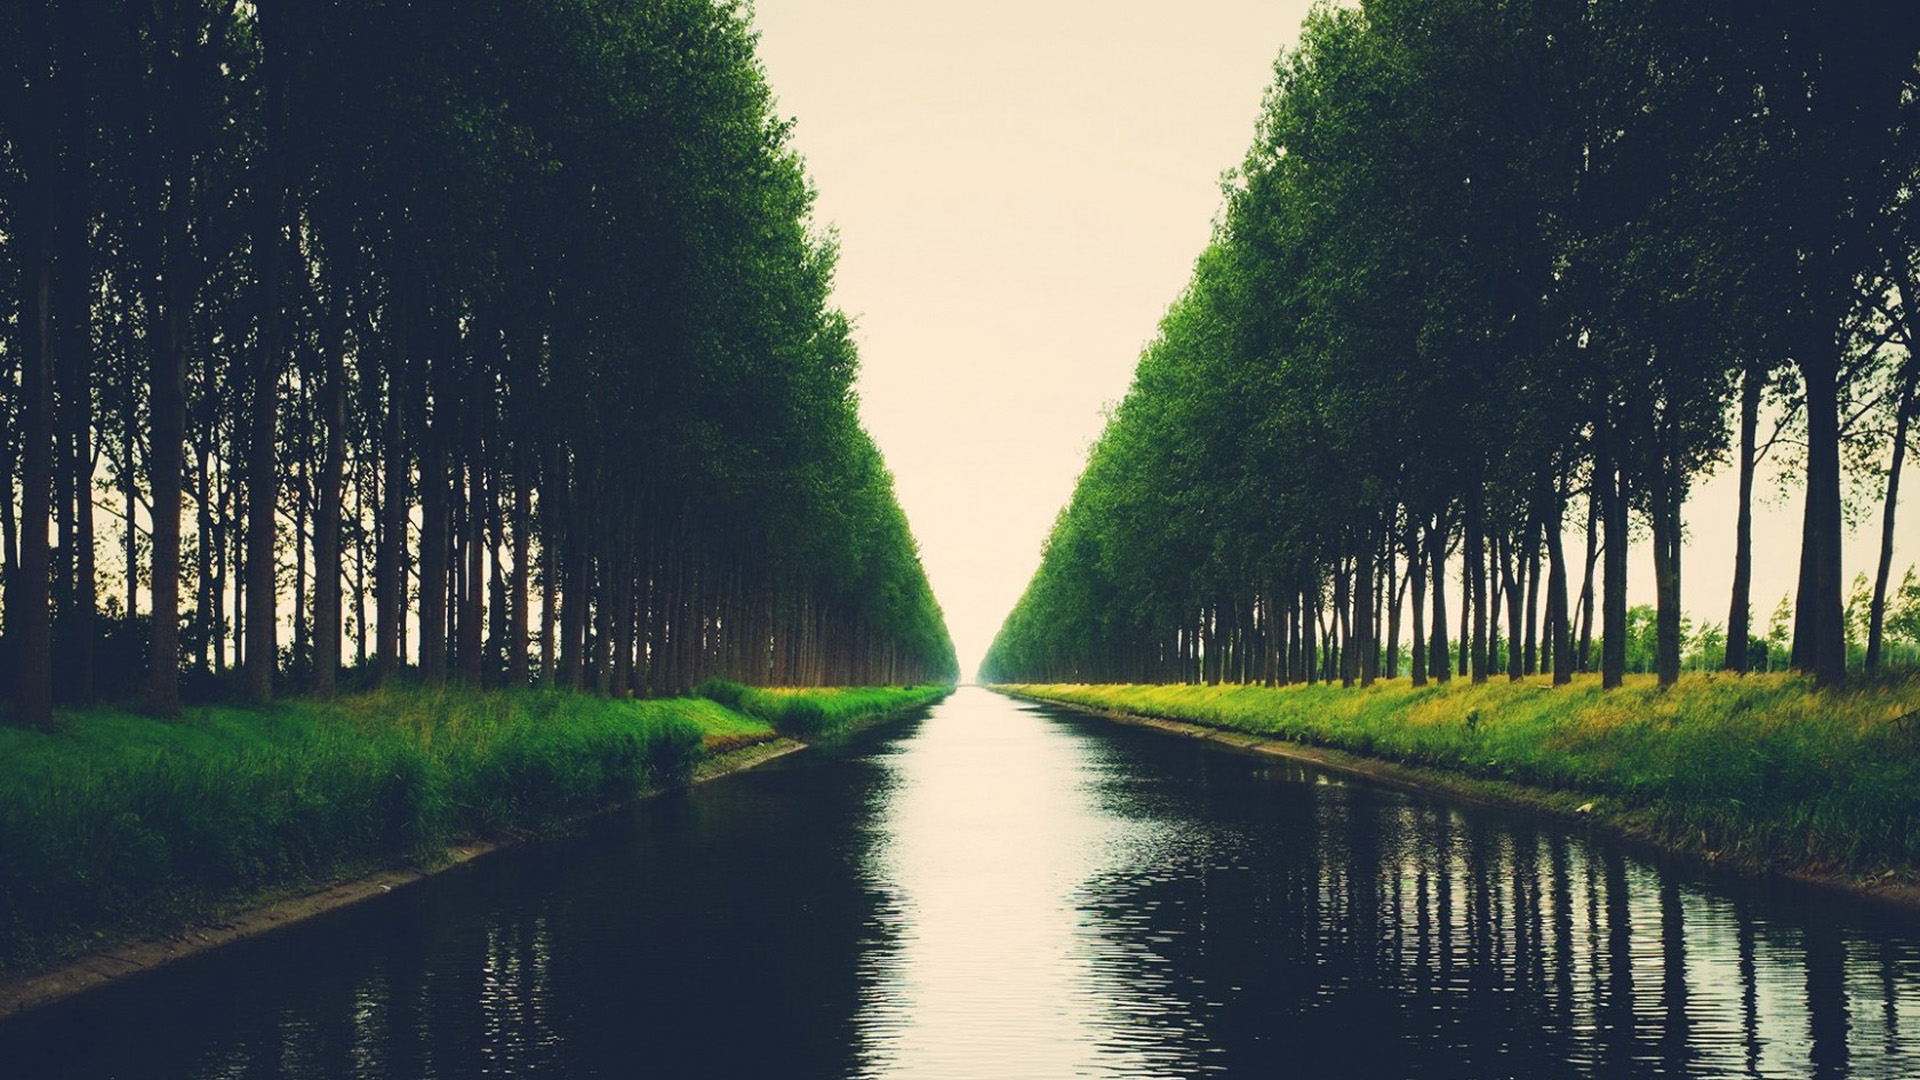 树木,水,河,绿色自然风景壁纸